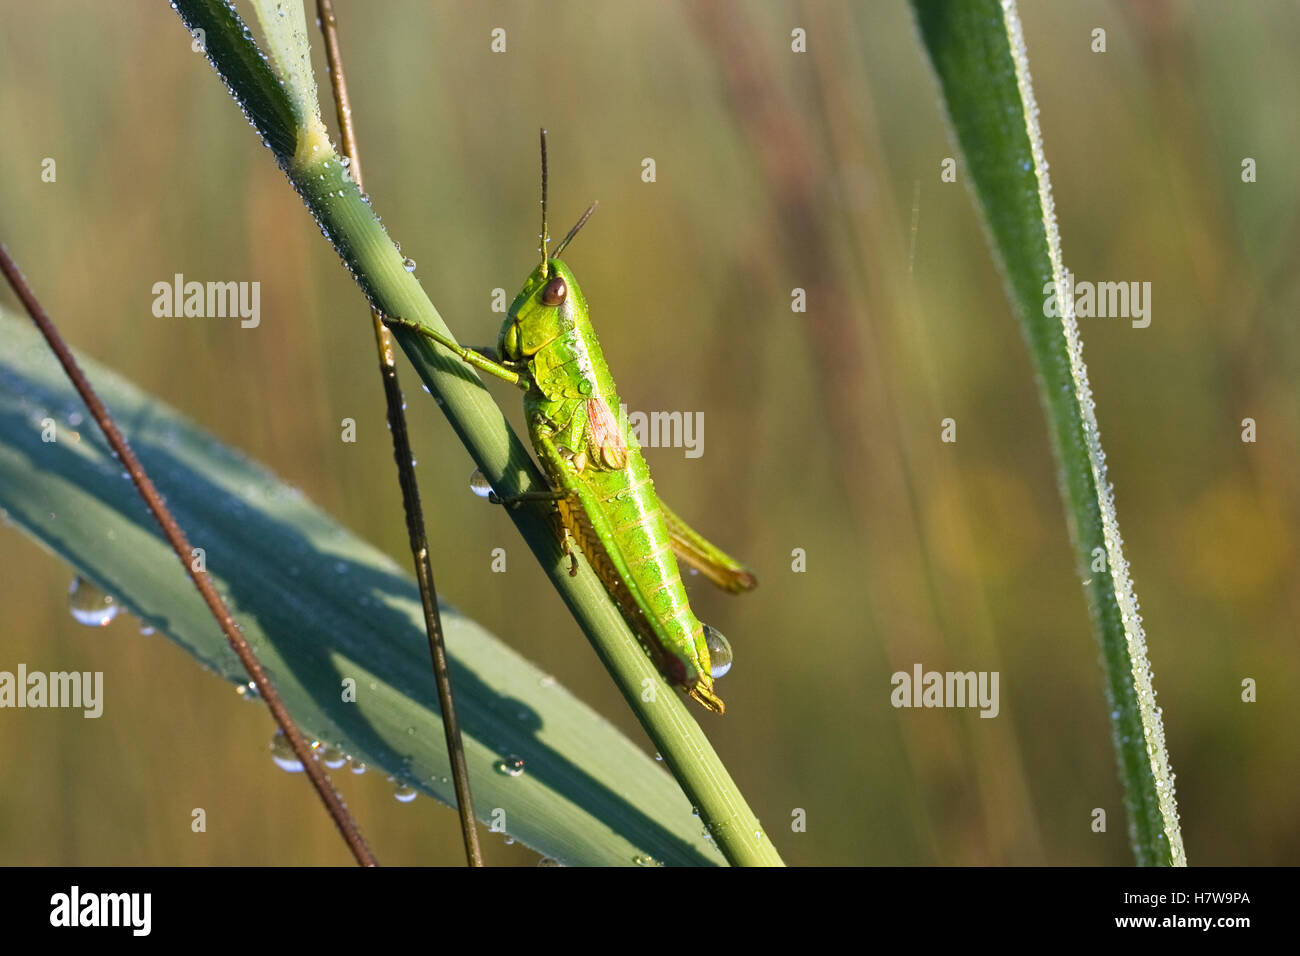 Short-horned Grasshopper (Chrysochraon brachyptera) female, Germany Stock Photo